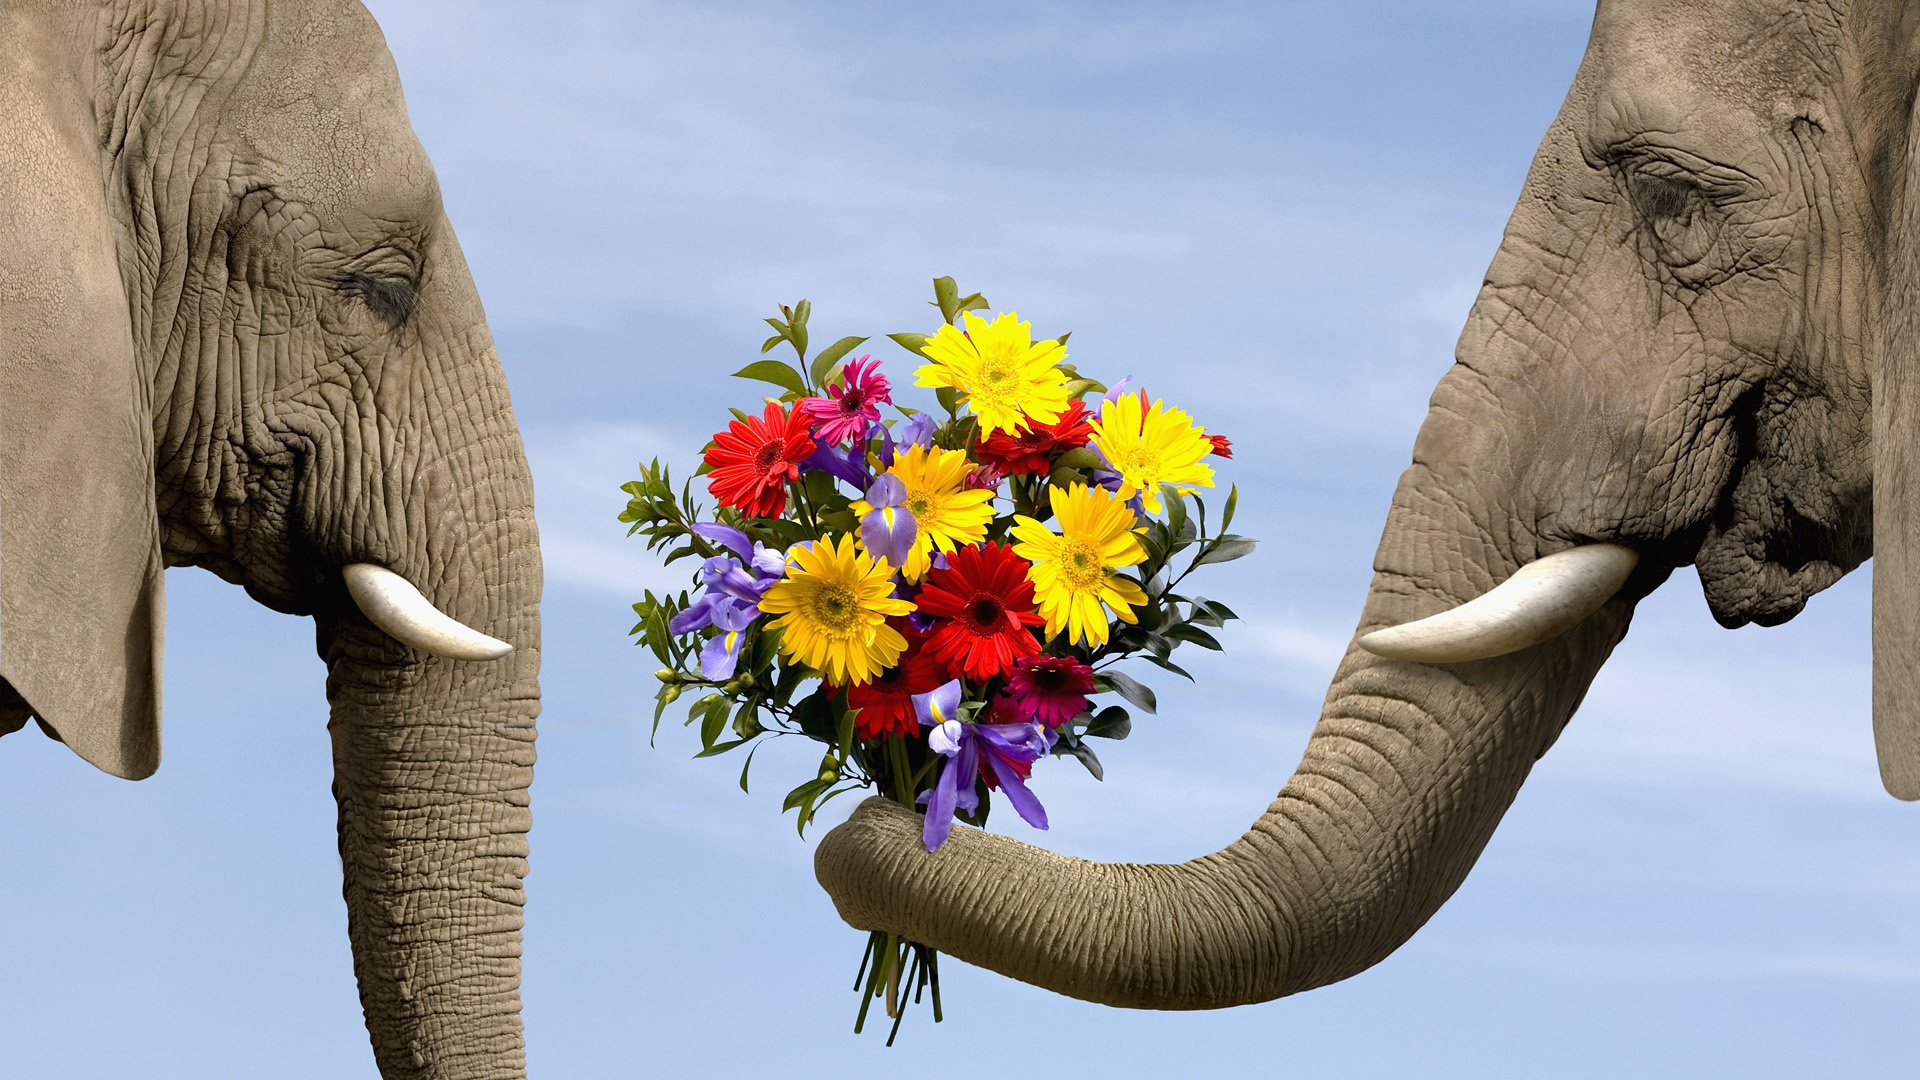 слоны, цветы, слон слонихе дарит букет, животные, смешные картинки, elephants, flowers, elephant elephant gives a bouquet, animals, funny pictures